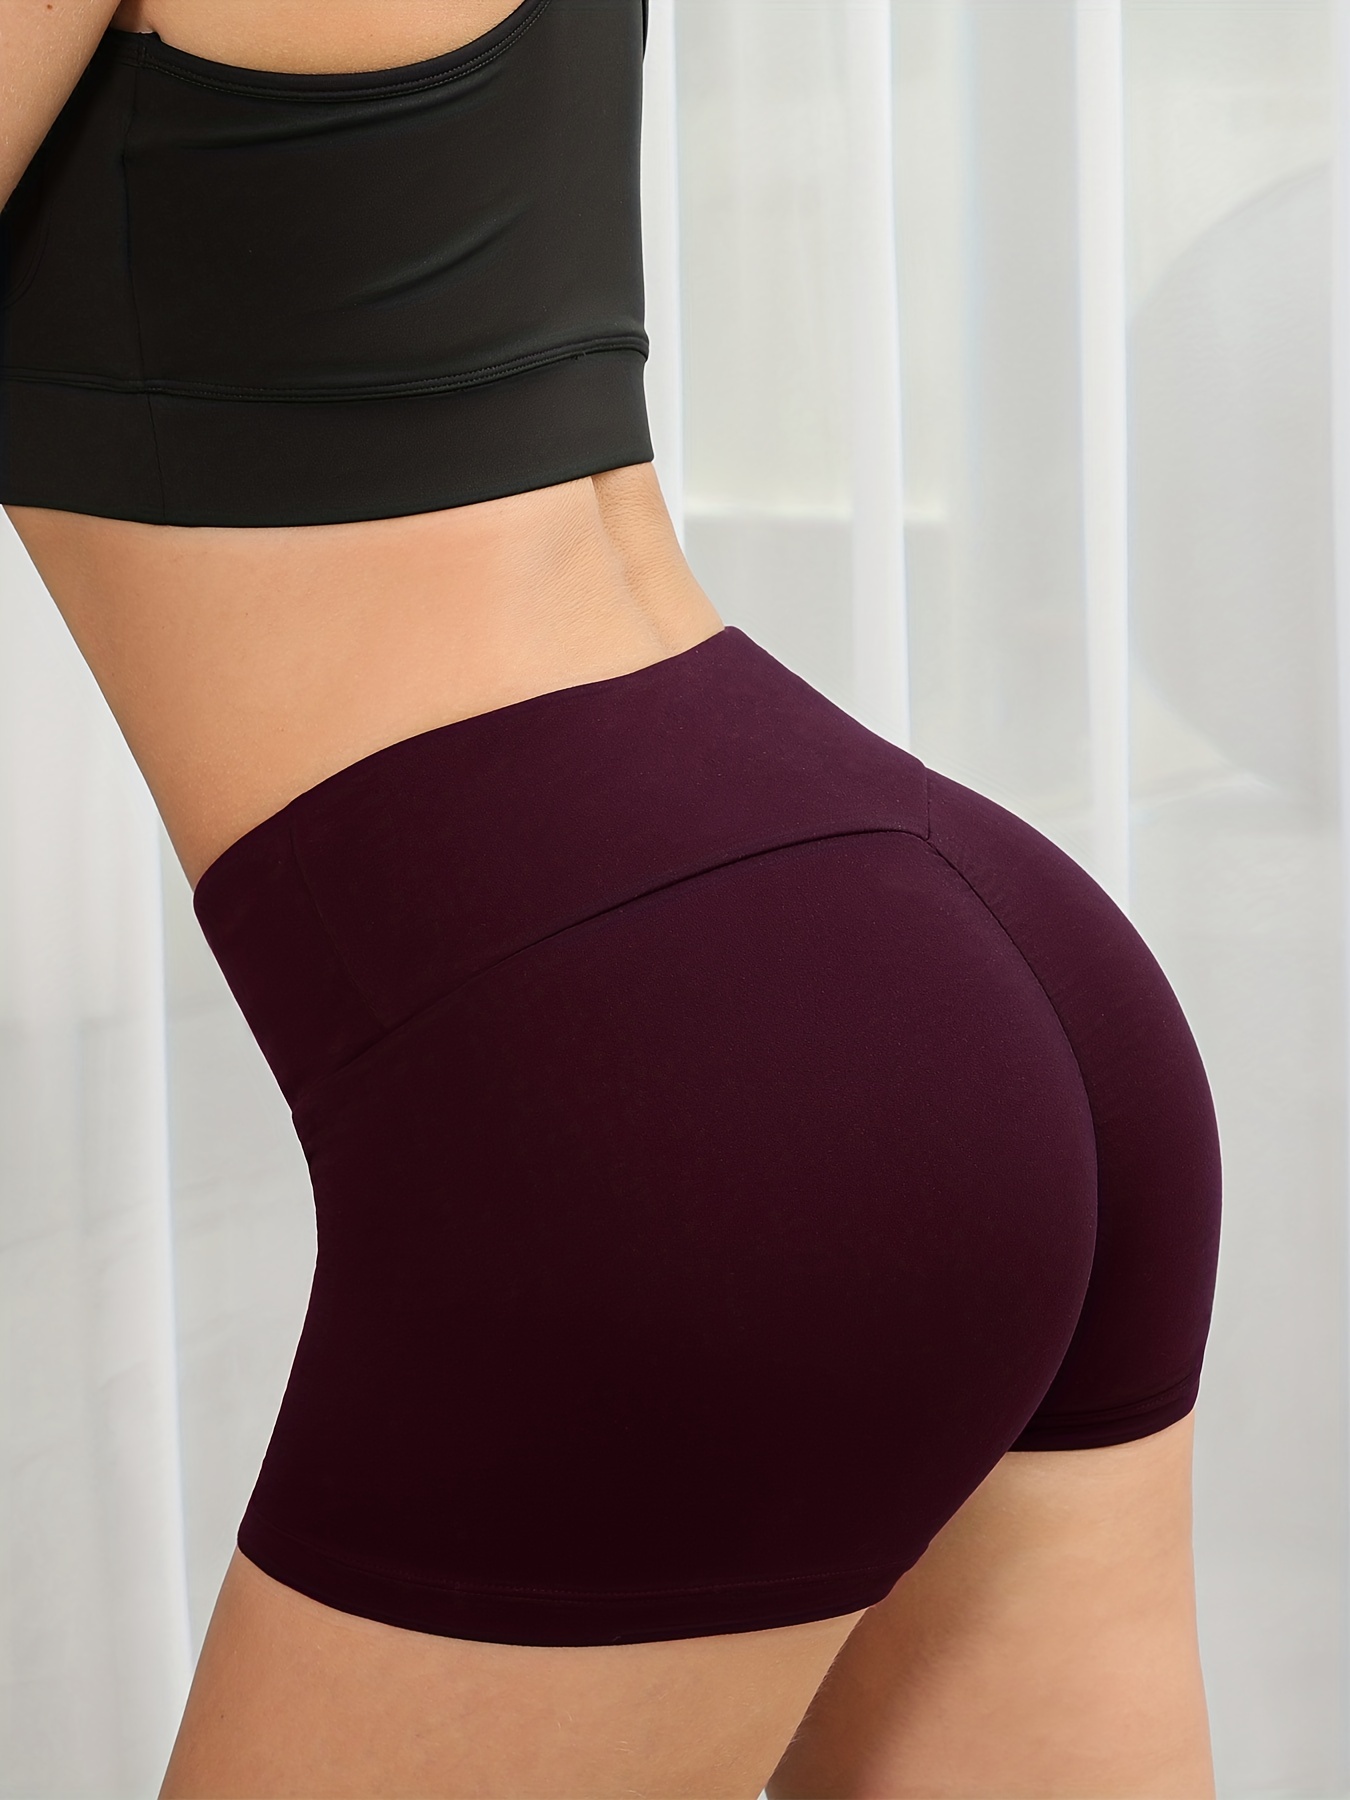 Scrunch Butt Lifting Shorts for Women High Waist Workout